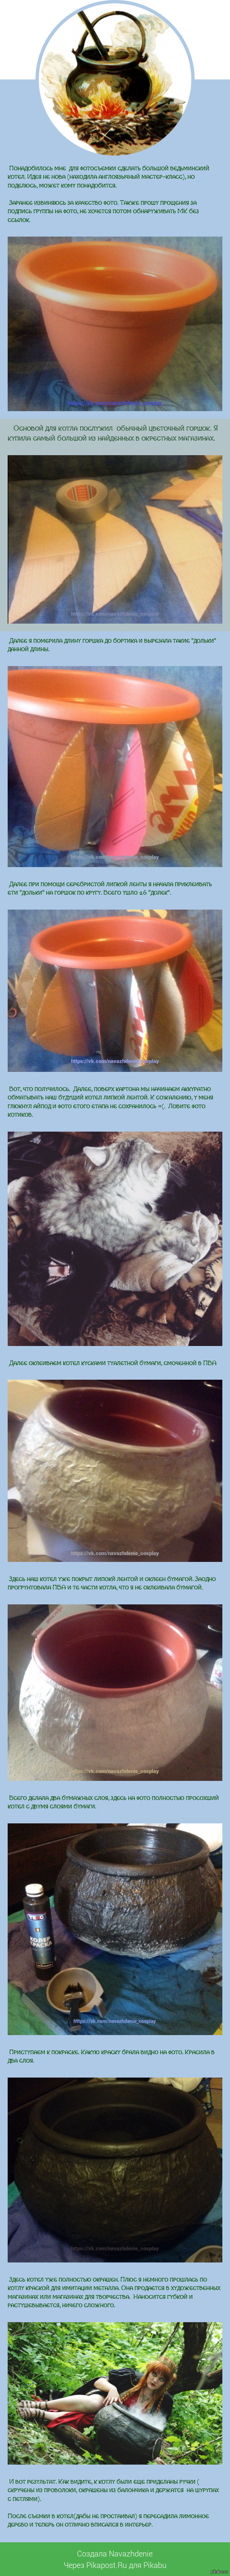 Как сделать оленя своими руками из проволоки, картона и других подручных средств - идеи от aikimaster.ru